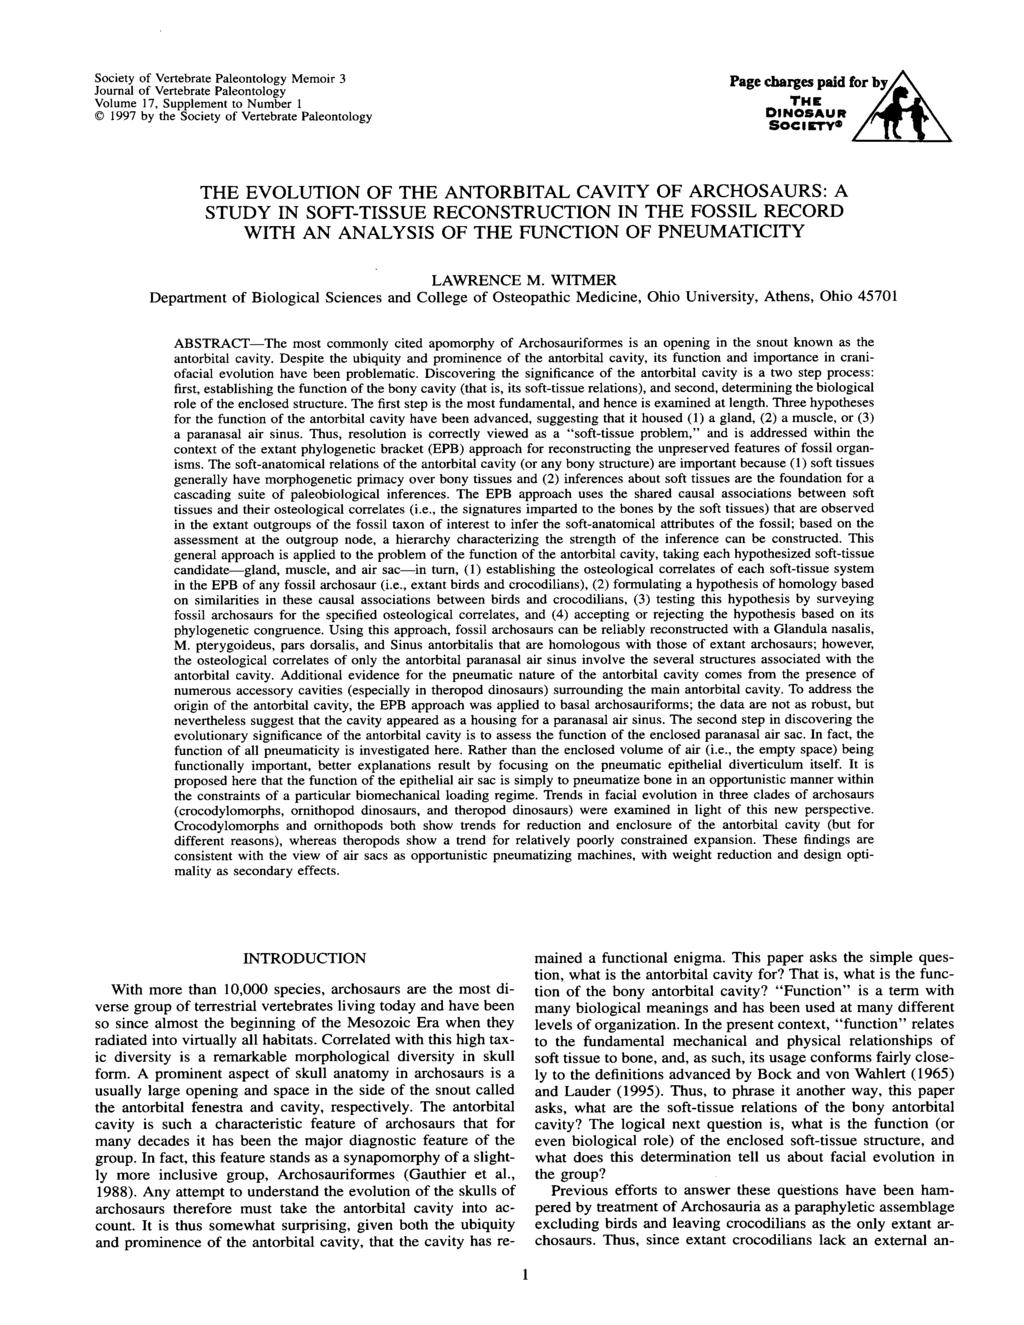 Society of Vertebrate Paleontology Memoir 3 Journal of Vertebrate Paleontology Volume 17, Supplement to Number 1 O 1997 by the Society of Vertebrate Paleontology THE EVOLUTION OF THE ANTORBITAL